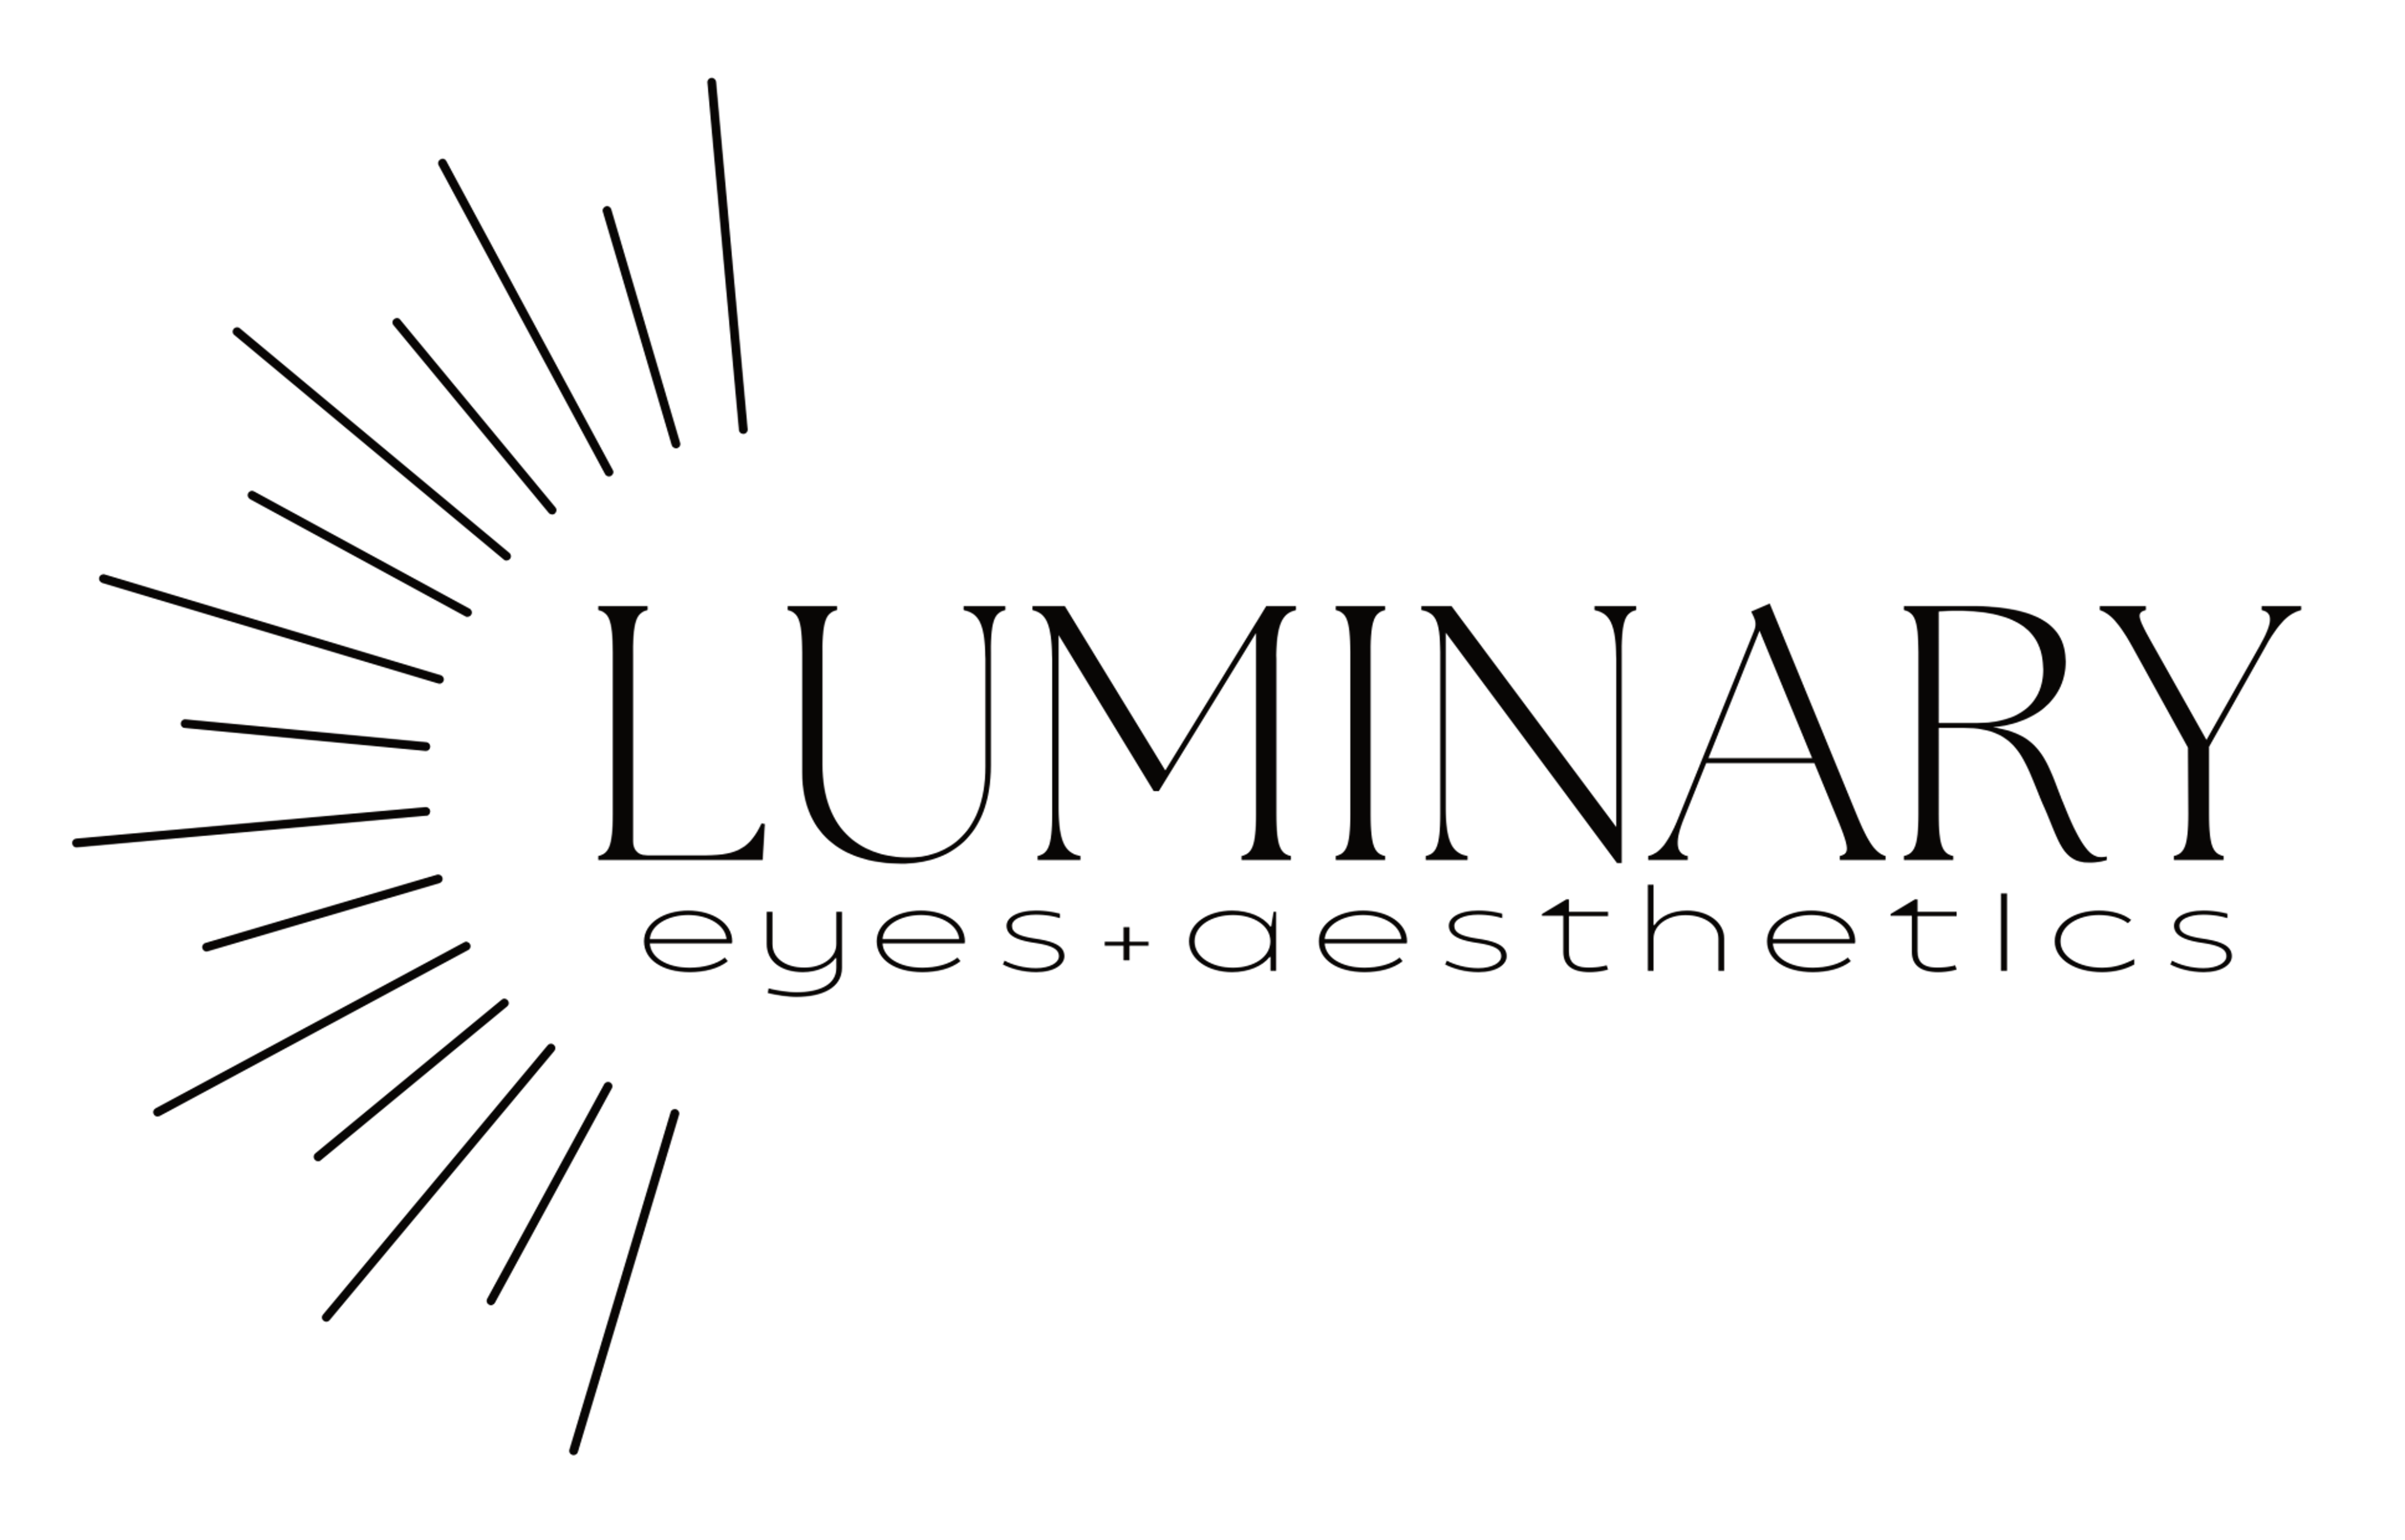 Luminary Eyes + Aesthetics